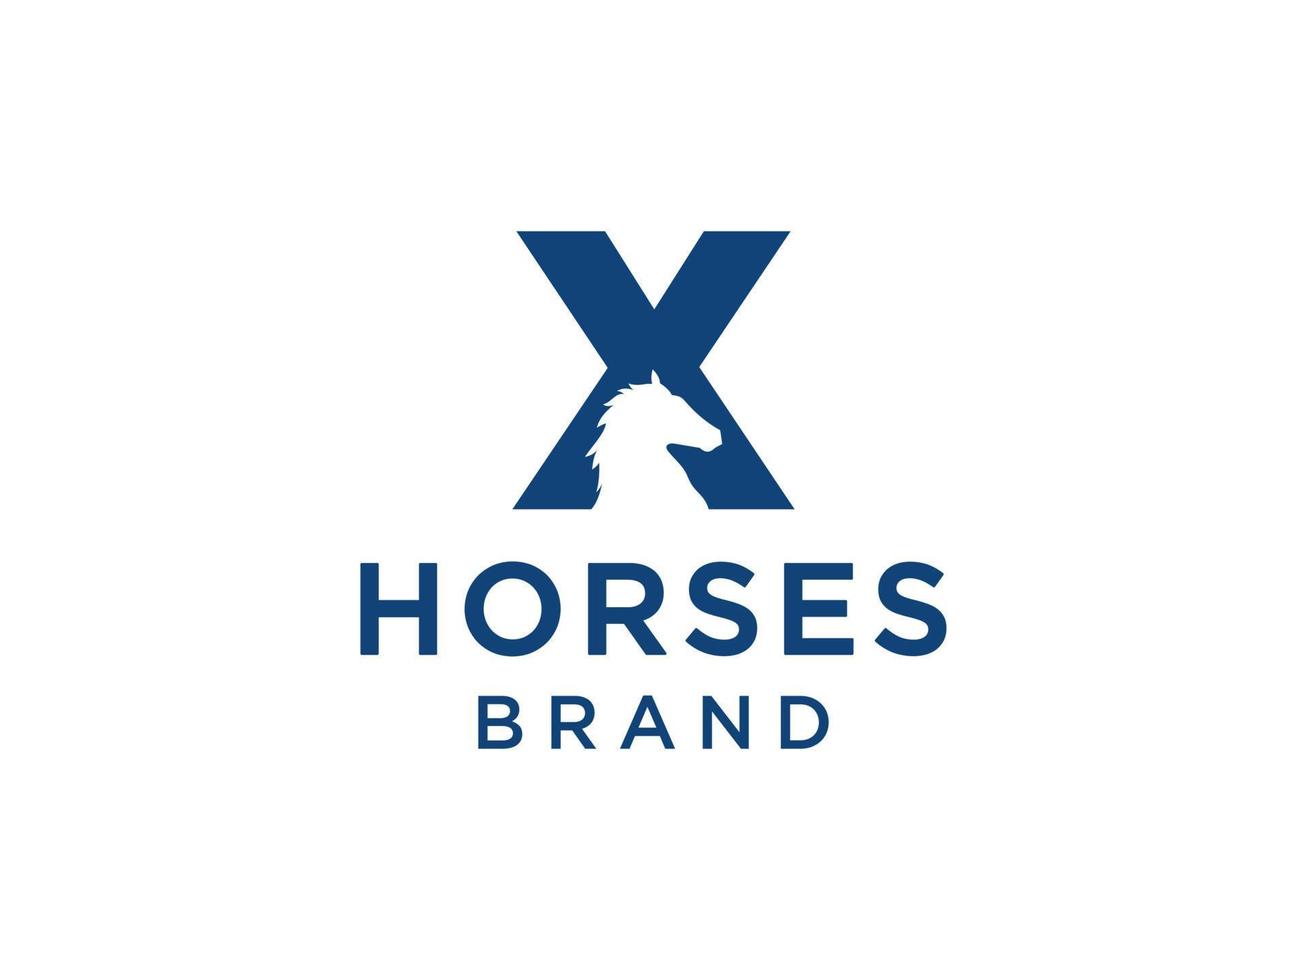 el diseño del logotipo con la letra inicial x se combina con un símbolo de cabeza de caballo moderno y profesional vector